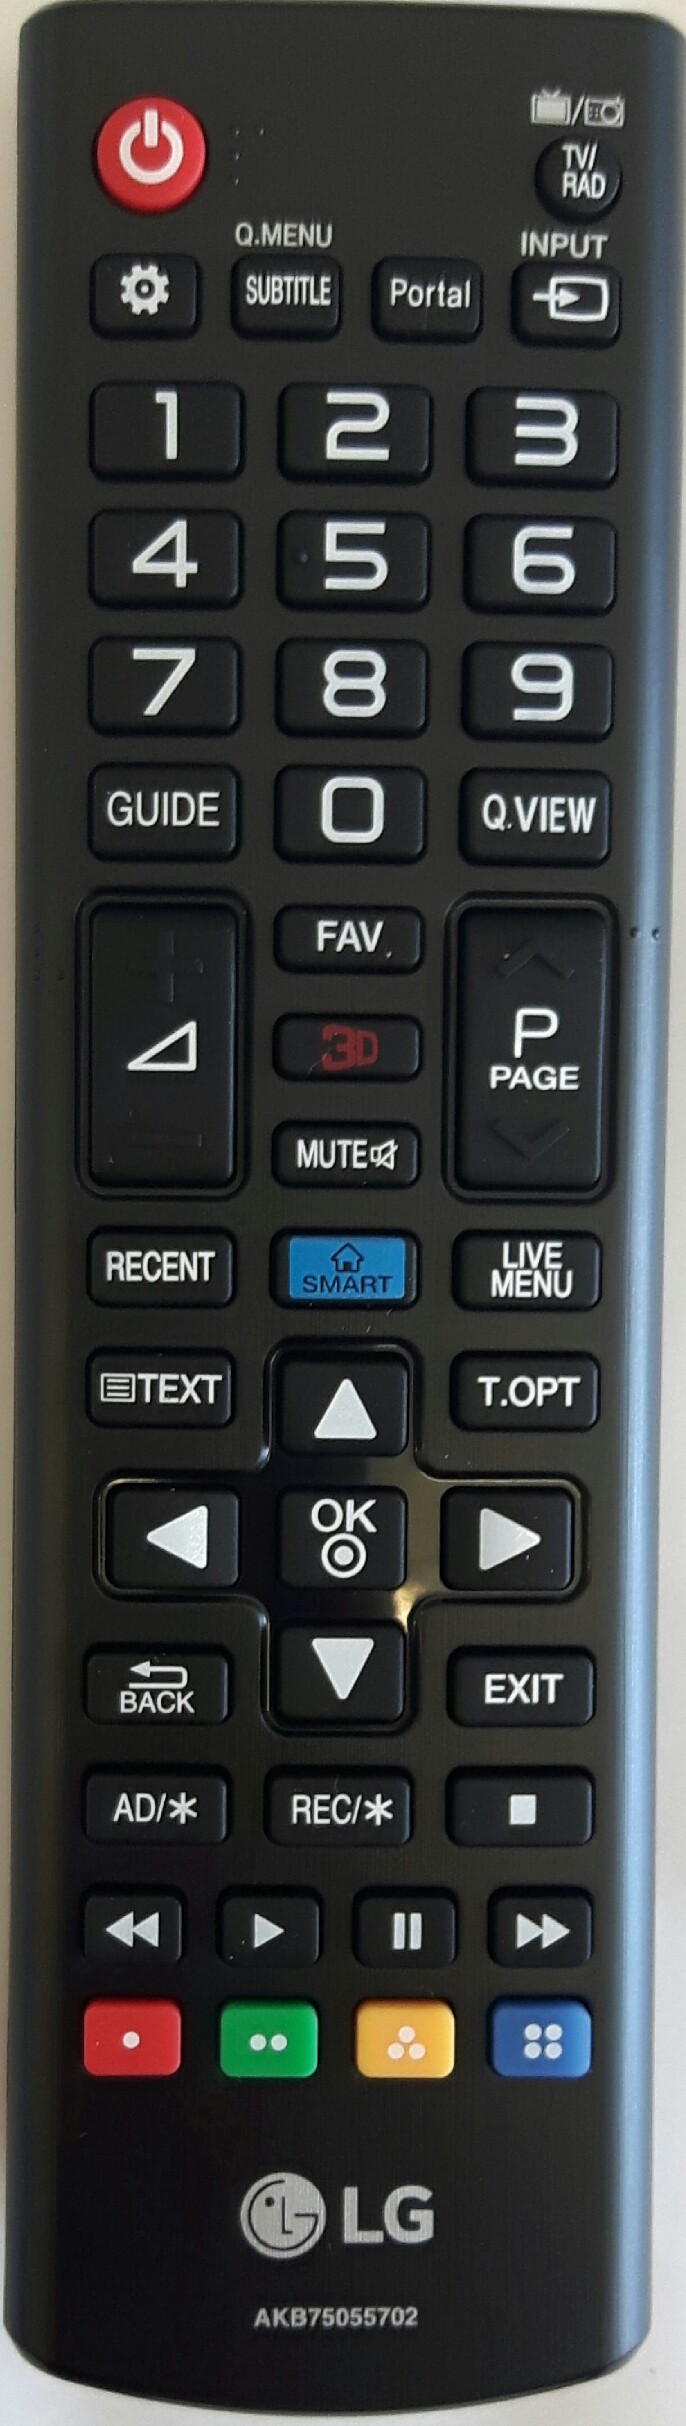 LG 49LB5500 Remote Control Original